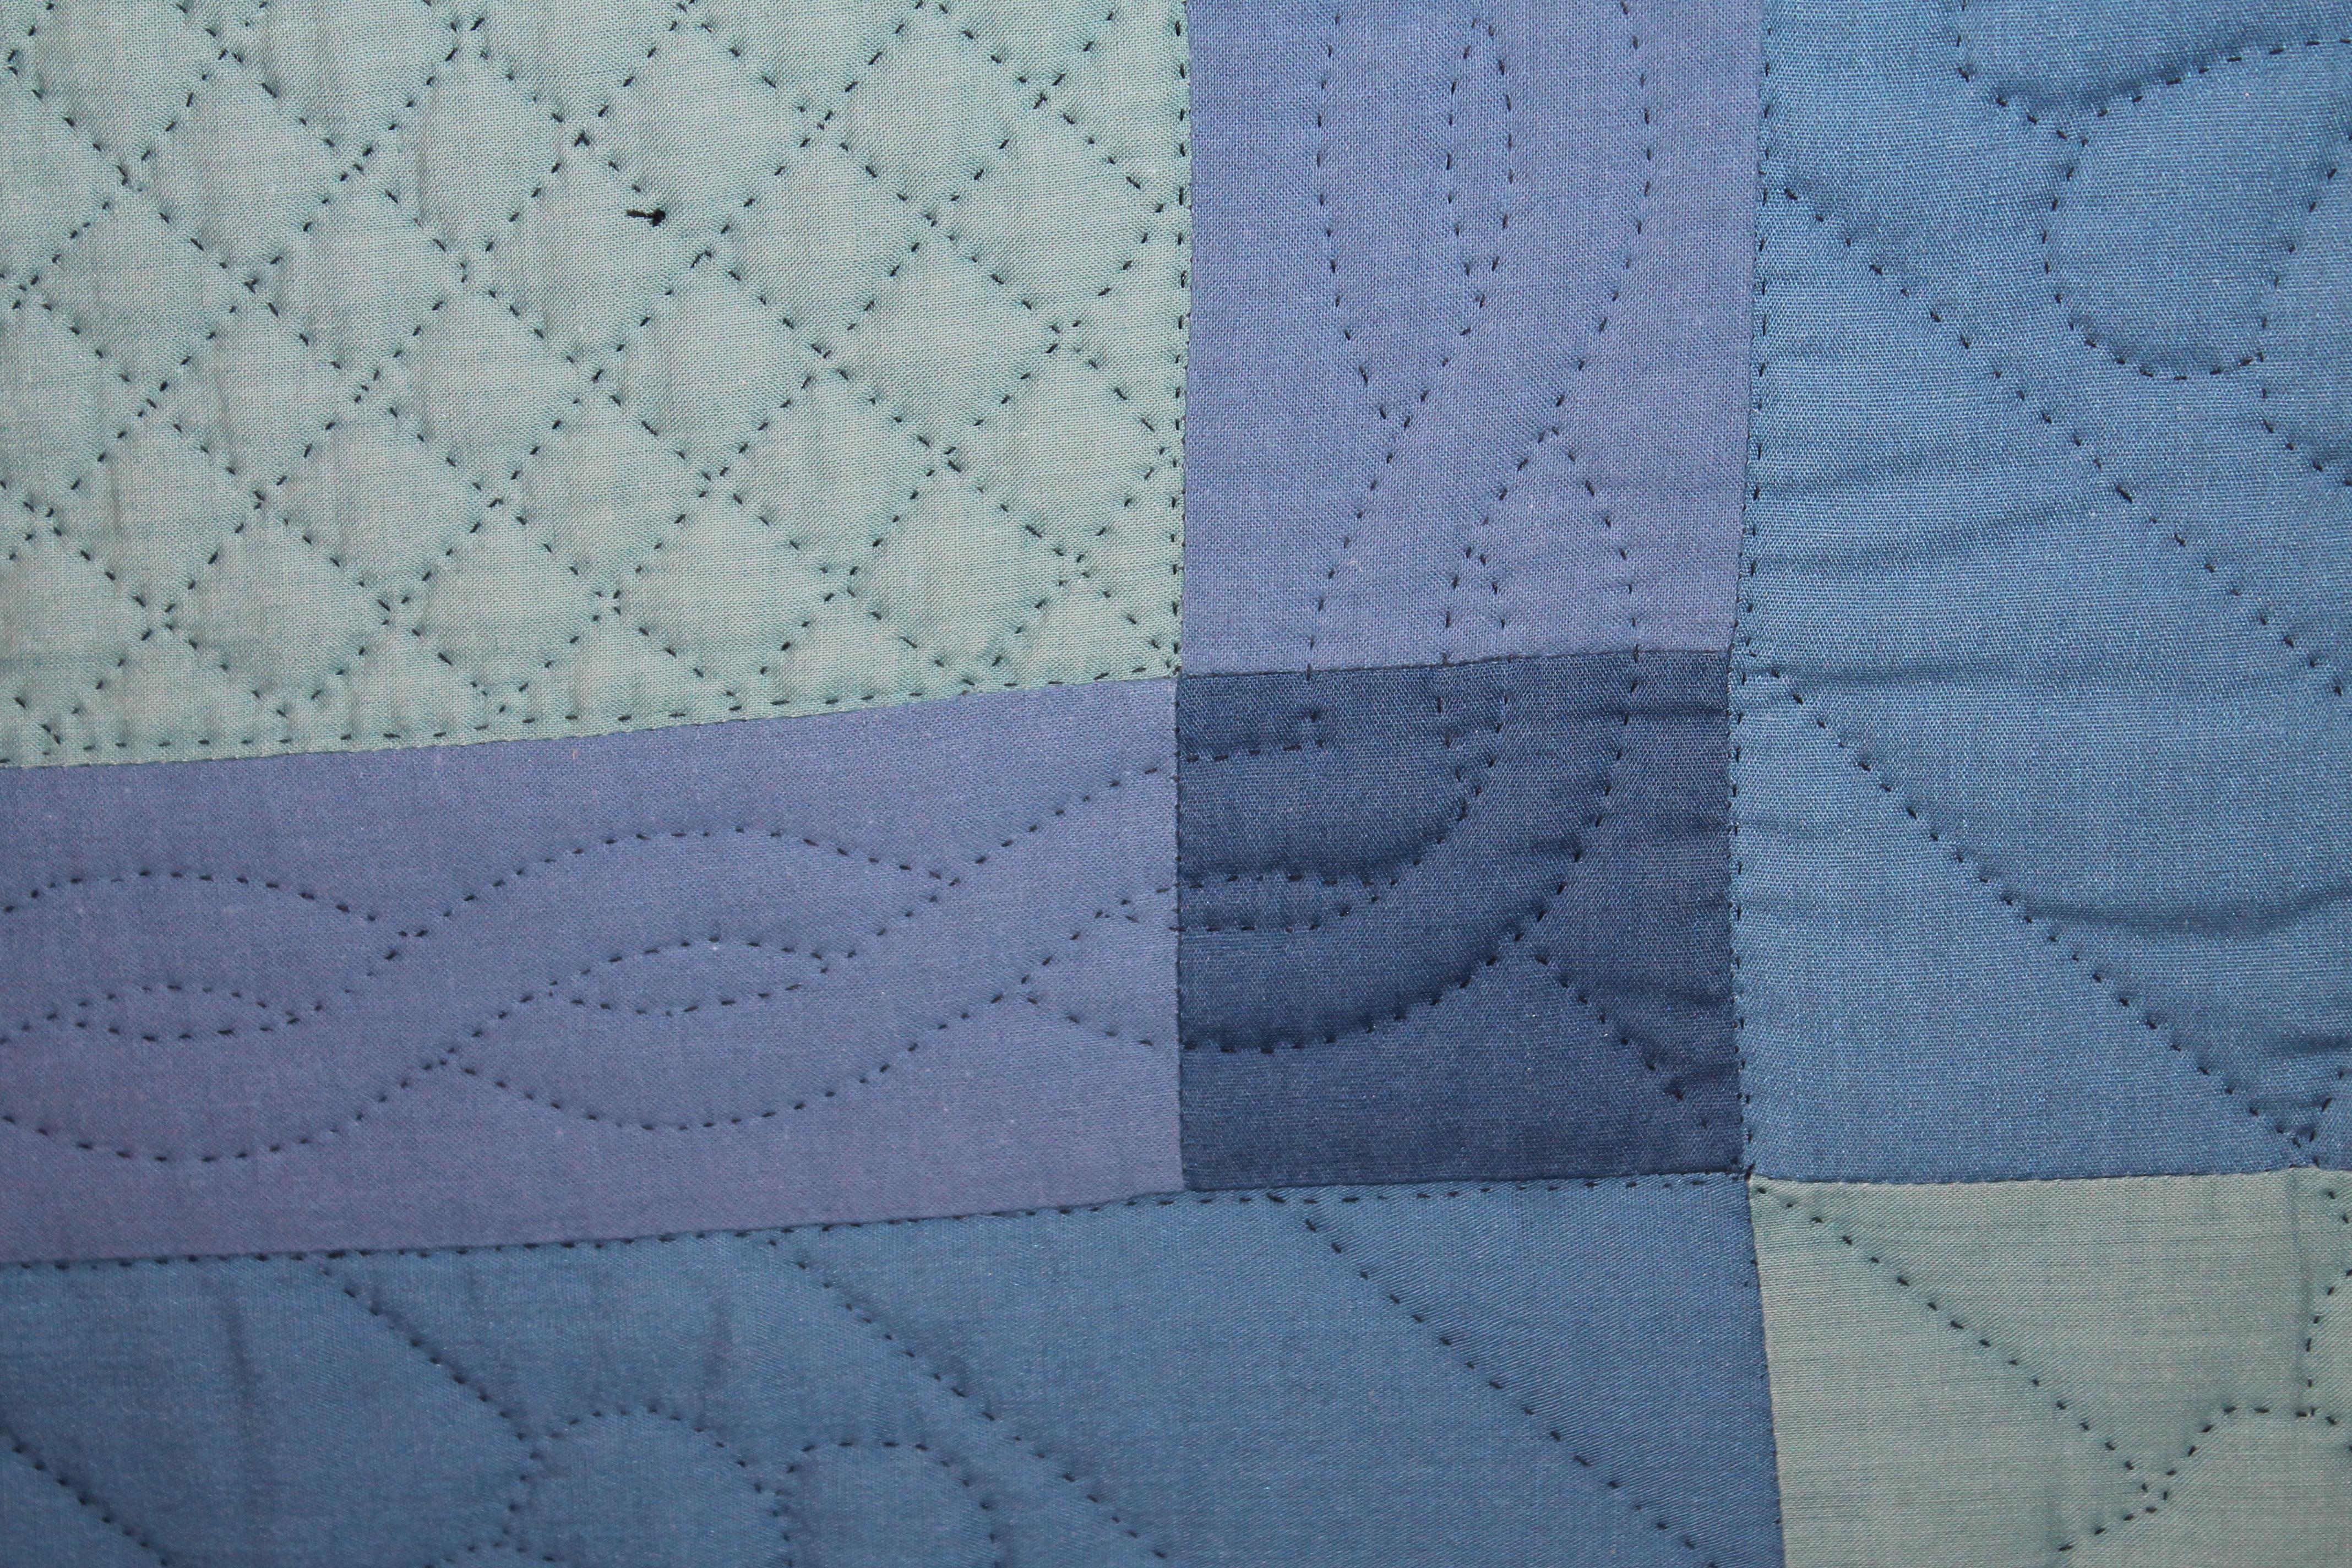 wash day 1956 quilt pattern